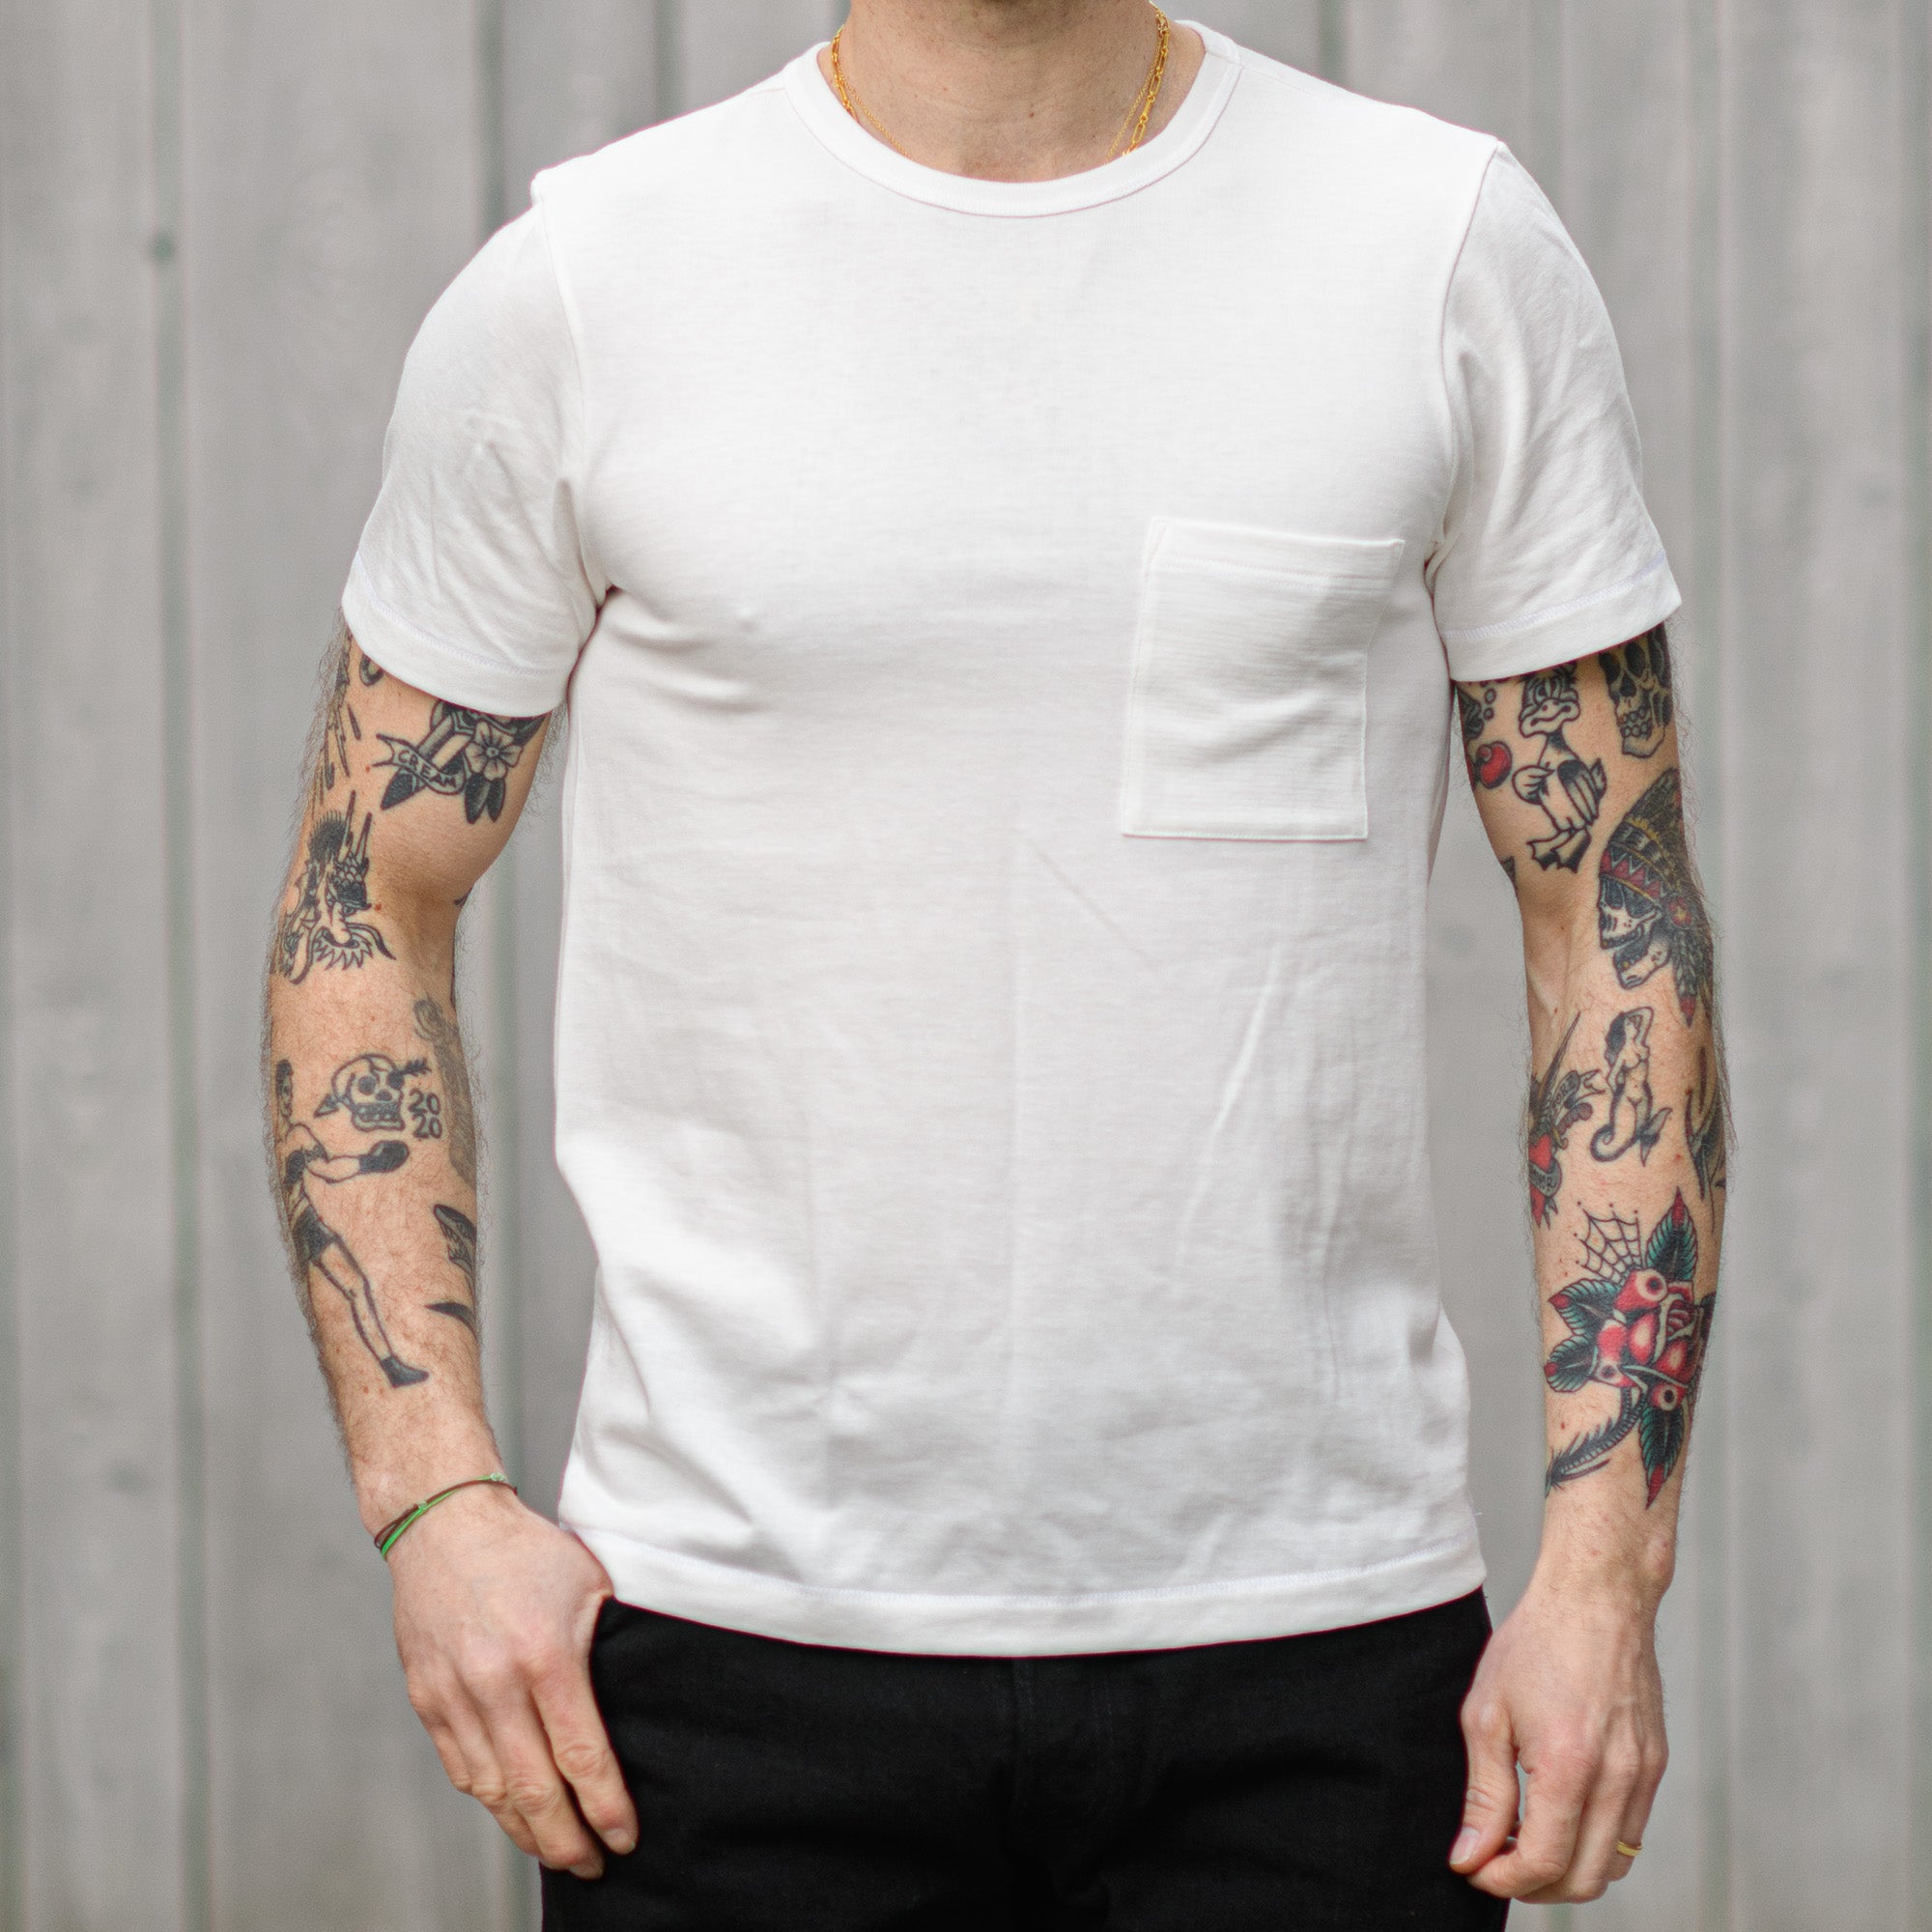 Schwanen Pocket / Edition Exclusive Limited Merz b T-Shirt (Europe) 215 Store – White